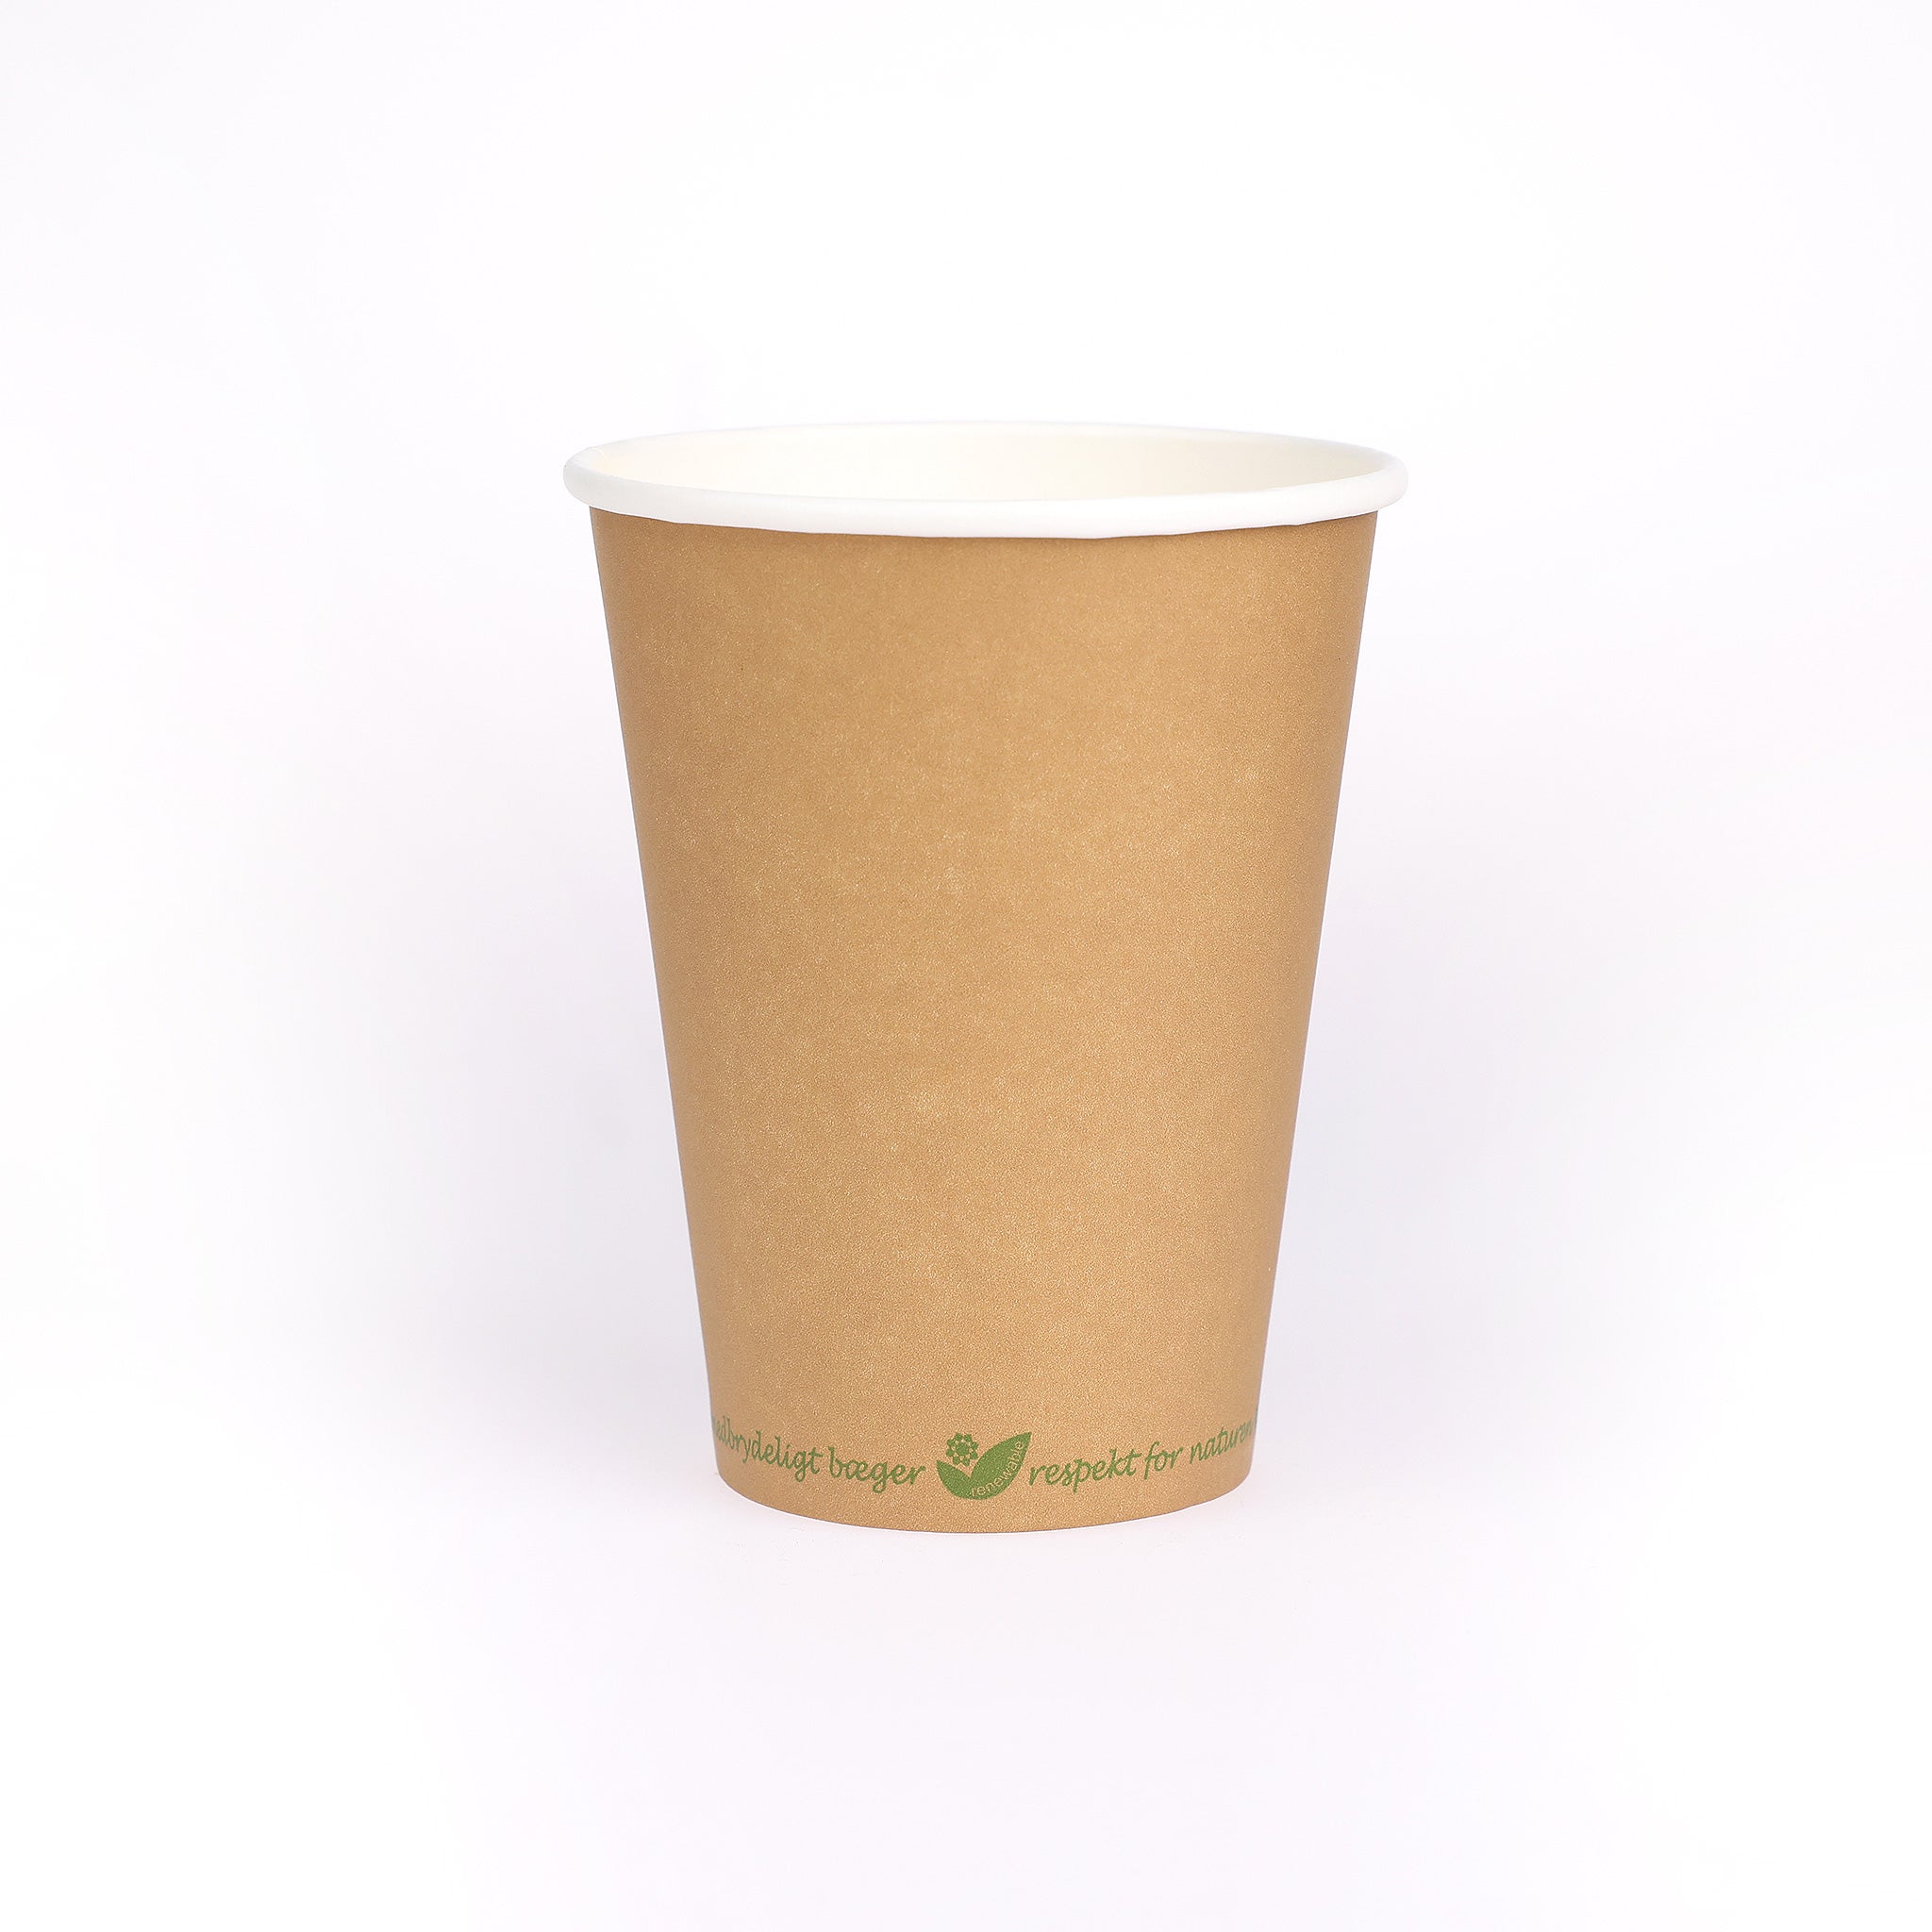 Bionedbrydeligt kaffebæger i miljøvenligt pap. Med PLA på indersiden, der sikrer høj tæthed. Kaffebægeret kan indeholde 25 cl.